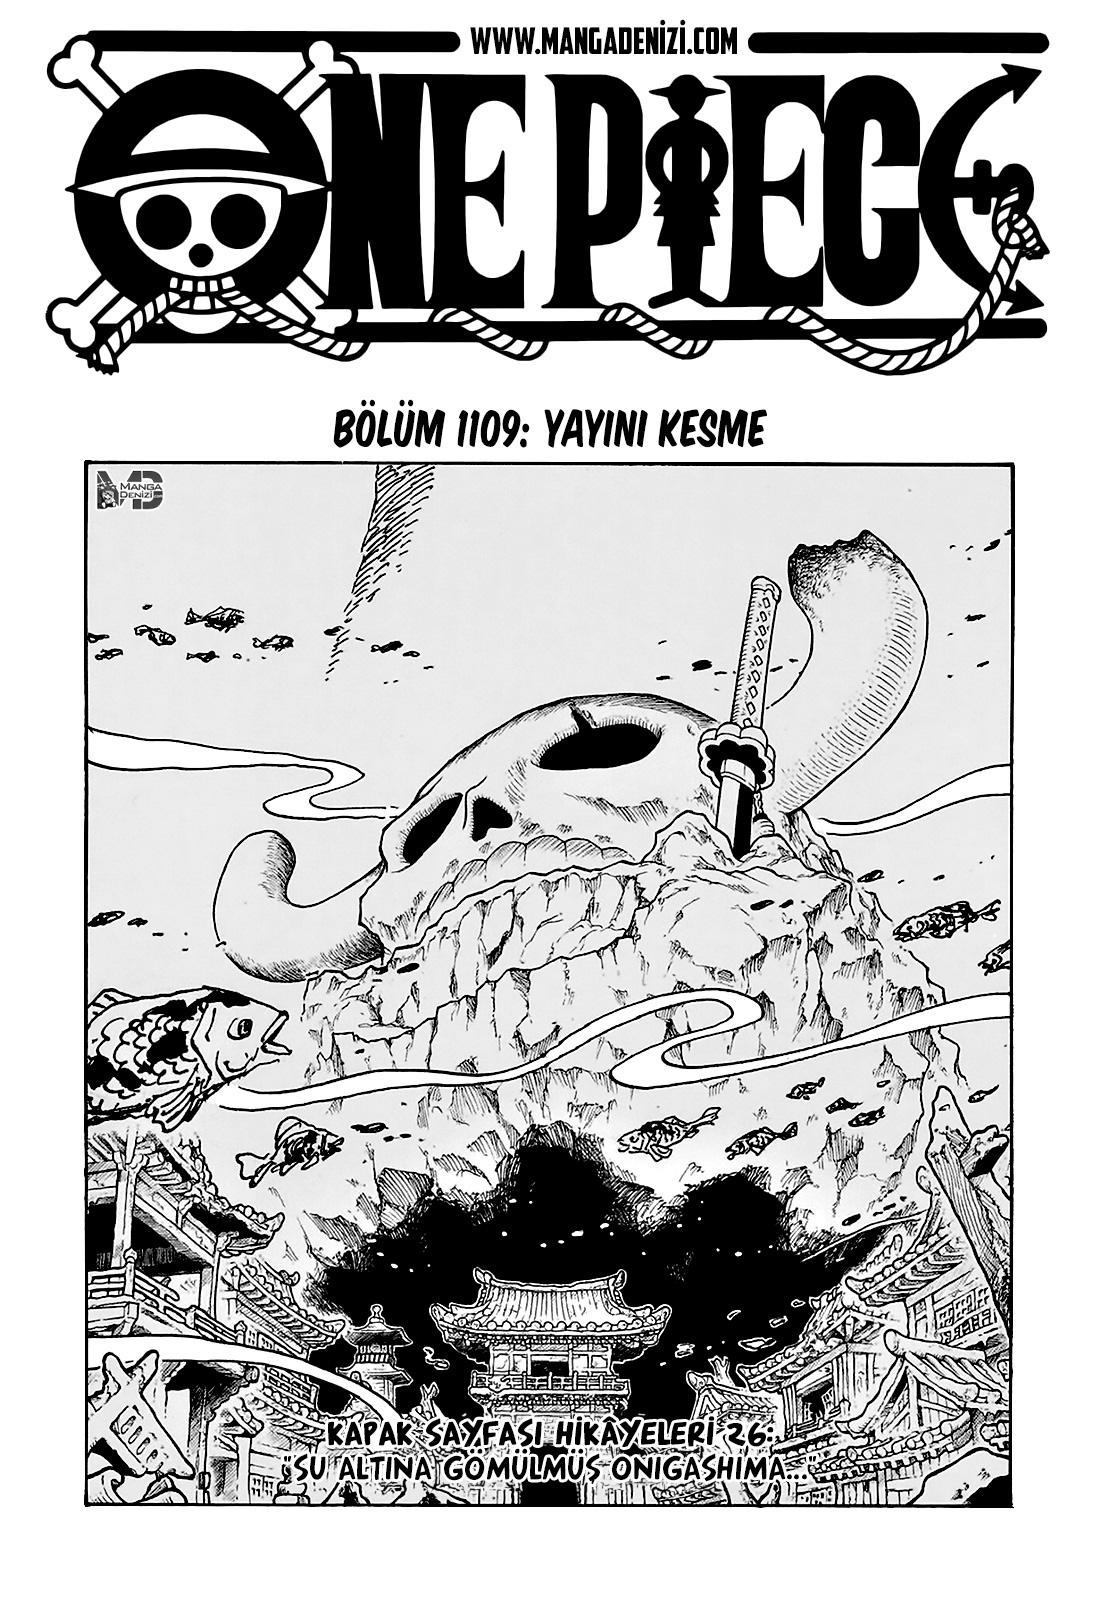 One Piece mangasının 1109 bölümünün 2. sayfasını okuyorsunuz.